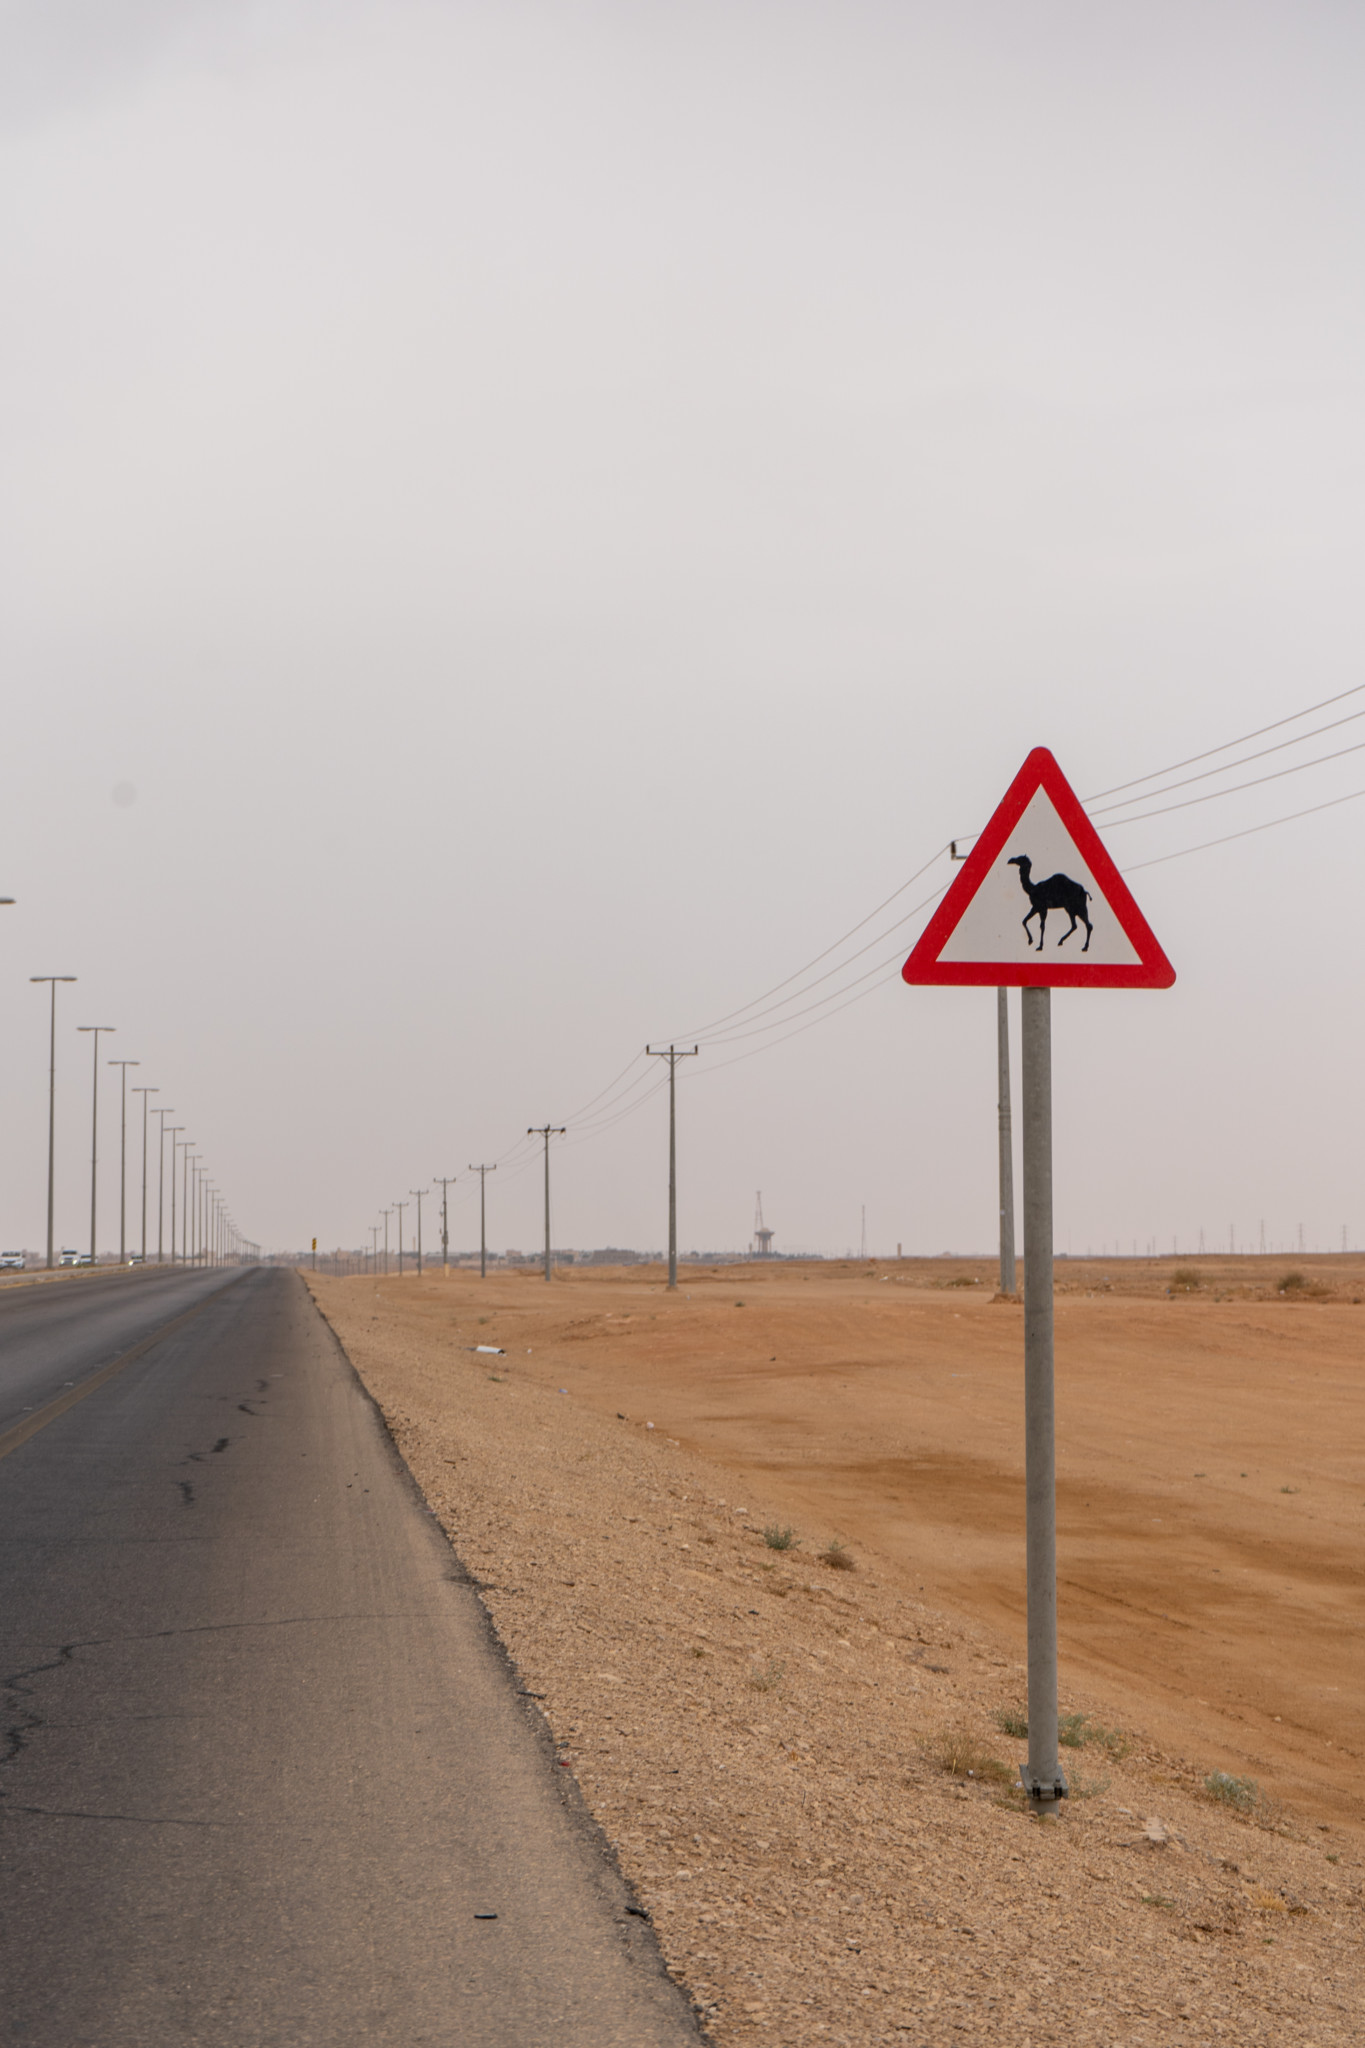 Ausflüge ab Riad führen meist in die Wüste